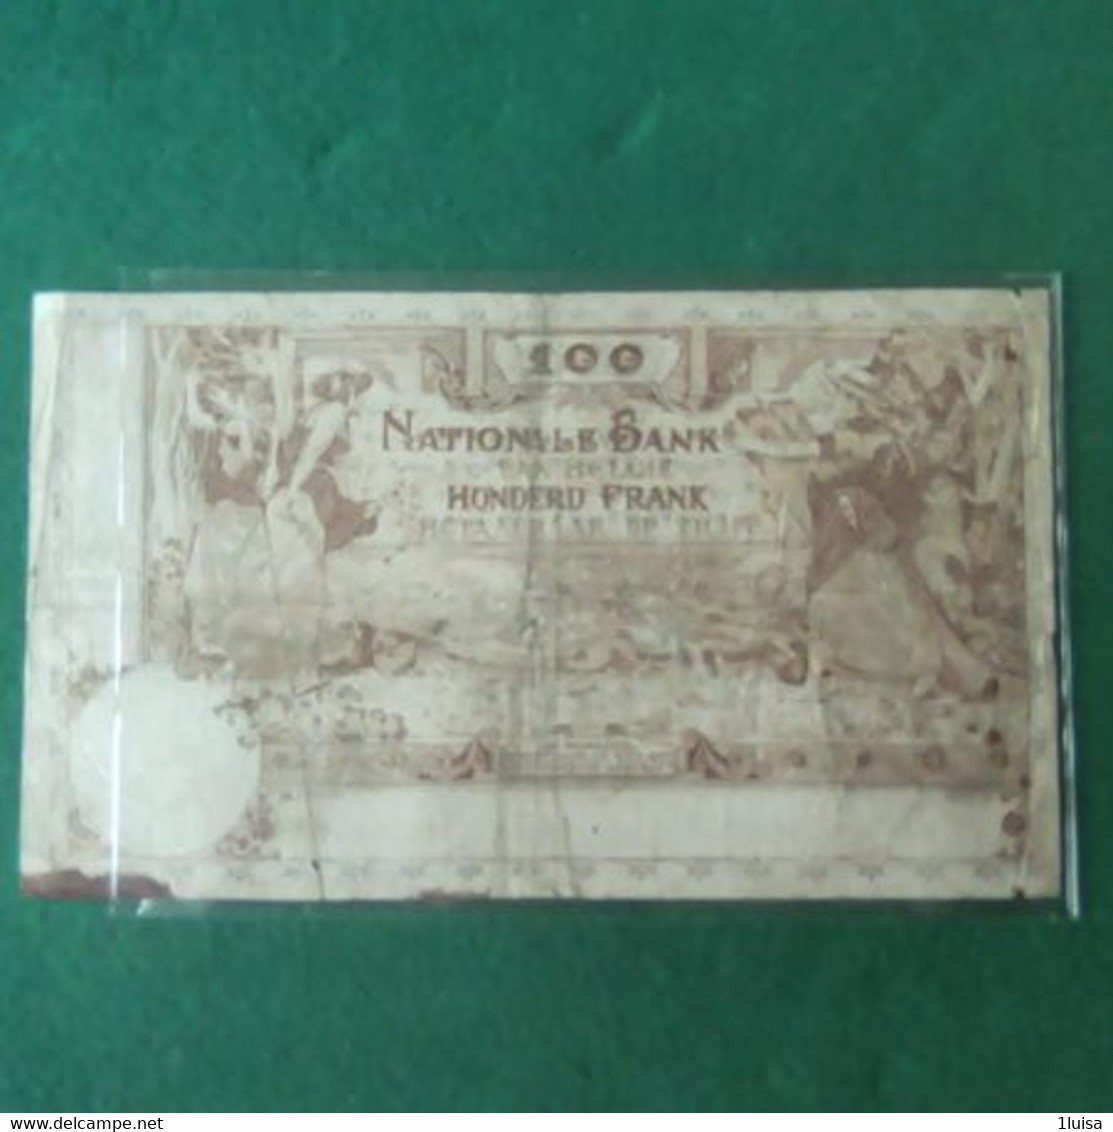 BELGIO 100 FRANCS 1914 - 100 Francs